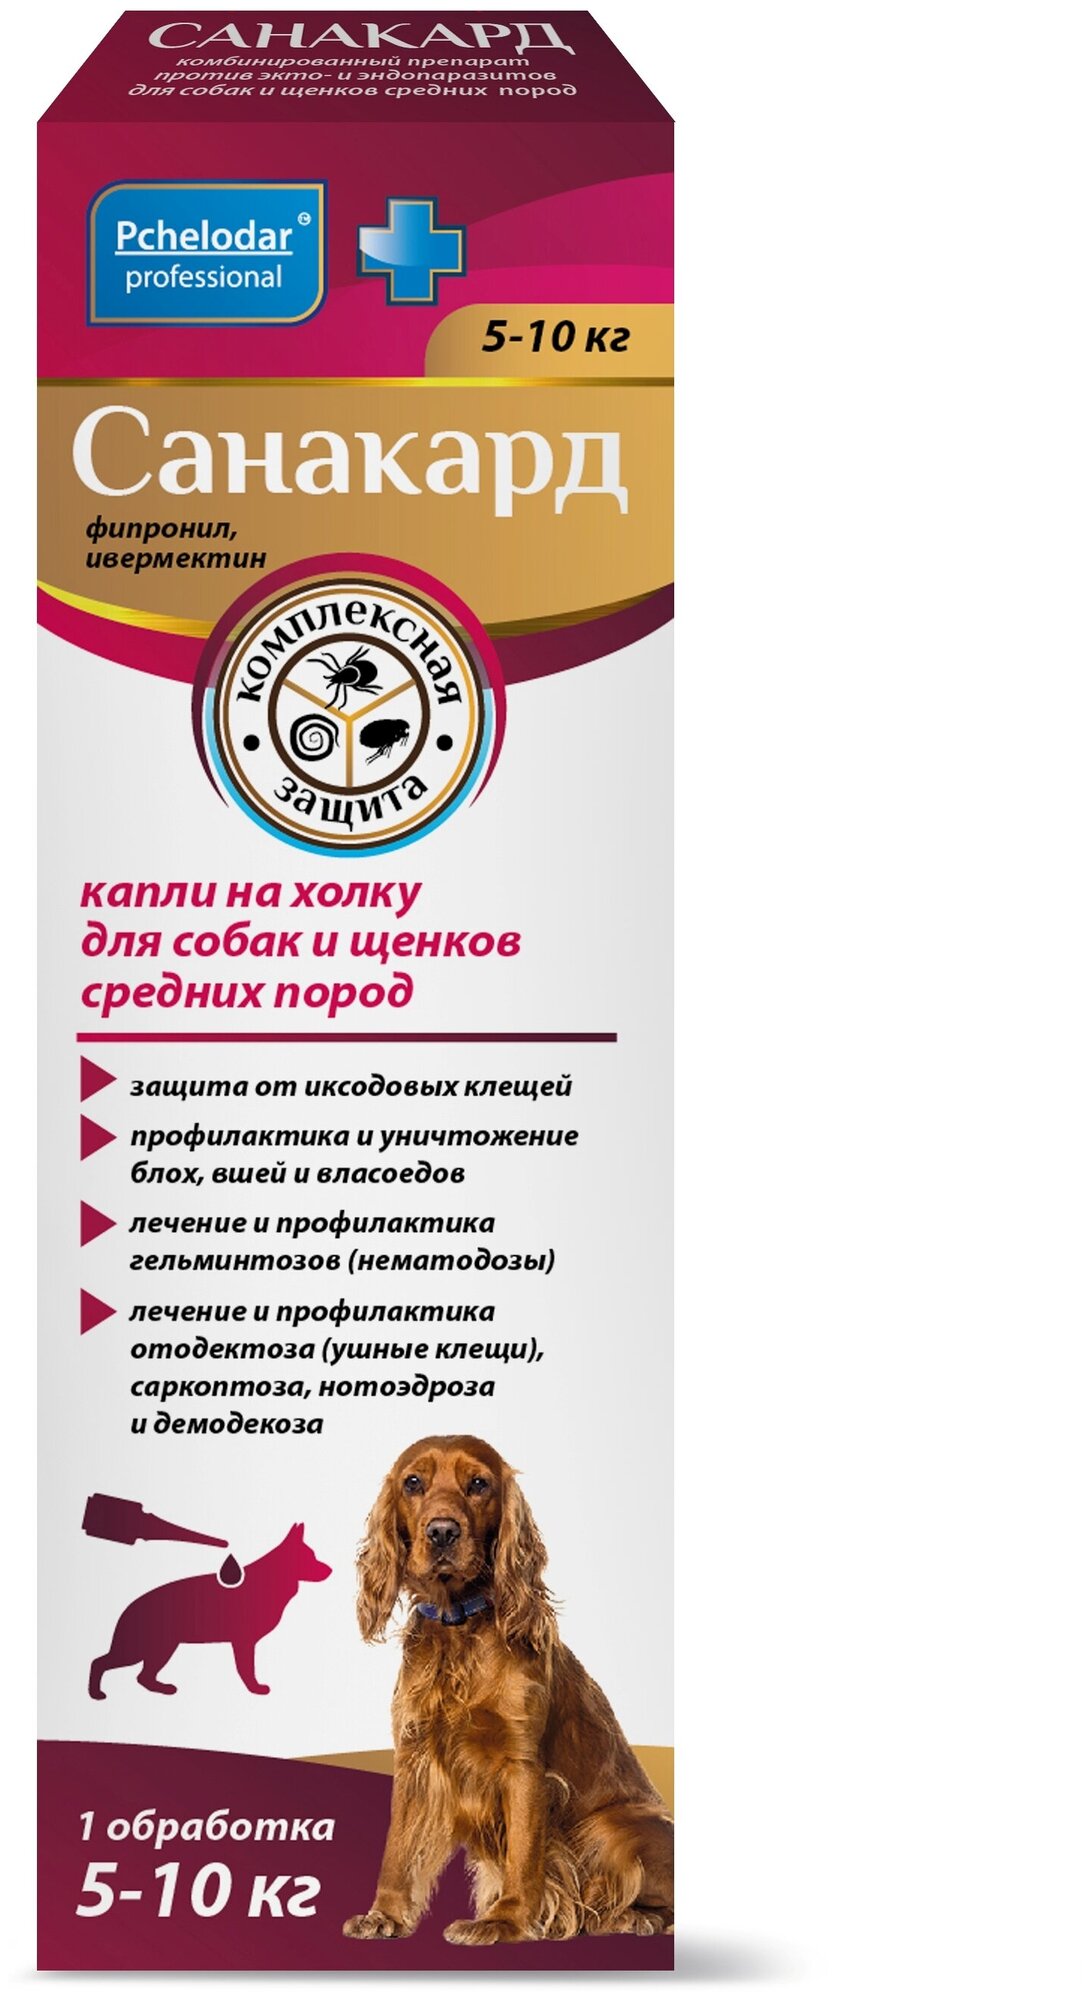 Pchelodar капли на холку Санакард противопаразитный для собак и щенков  средних пород 5-10кг 1мл (1 пипетка) — купить в интернет-магазине по низкой  цене на Яндекс Маркете